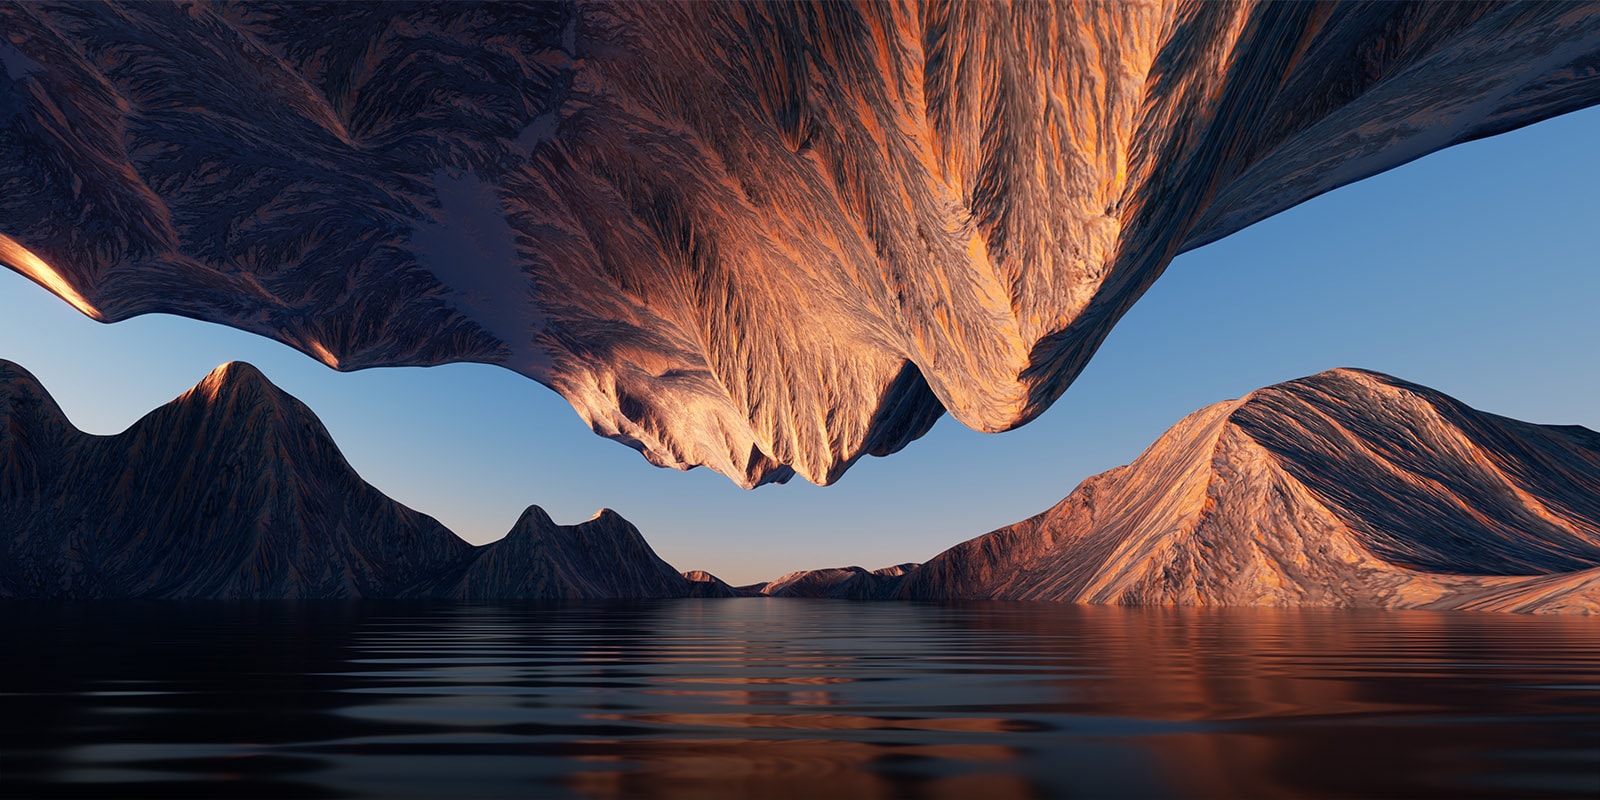 Das Naturbild mit dem Felsenberg, der sich von oben und unten gegenübersteht, zeigt den Kontrast und die Details.